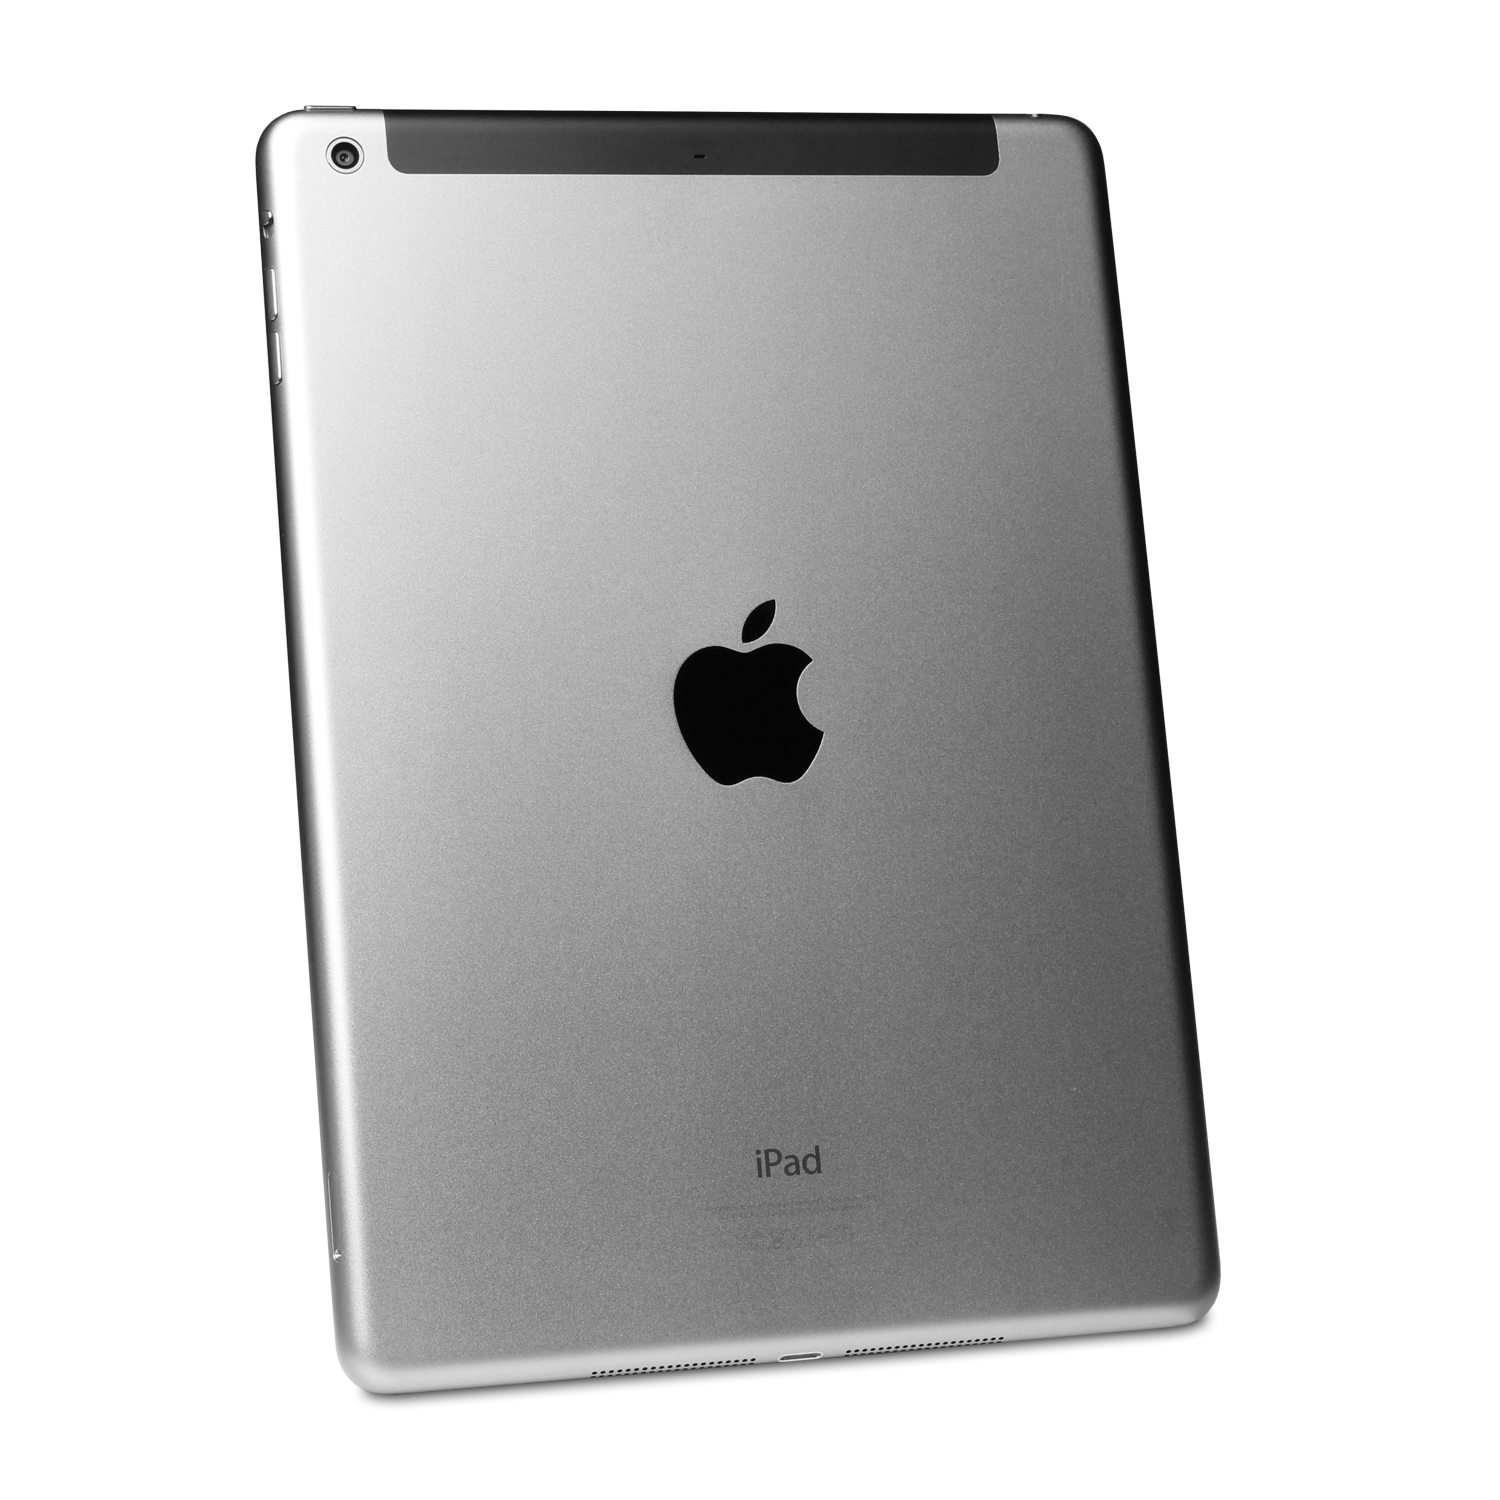 Apple, Inc. iPad Air Wi-Fi 16GB Space Gray